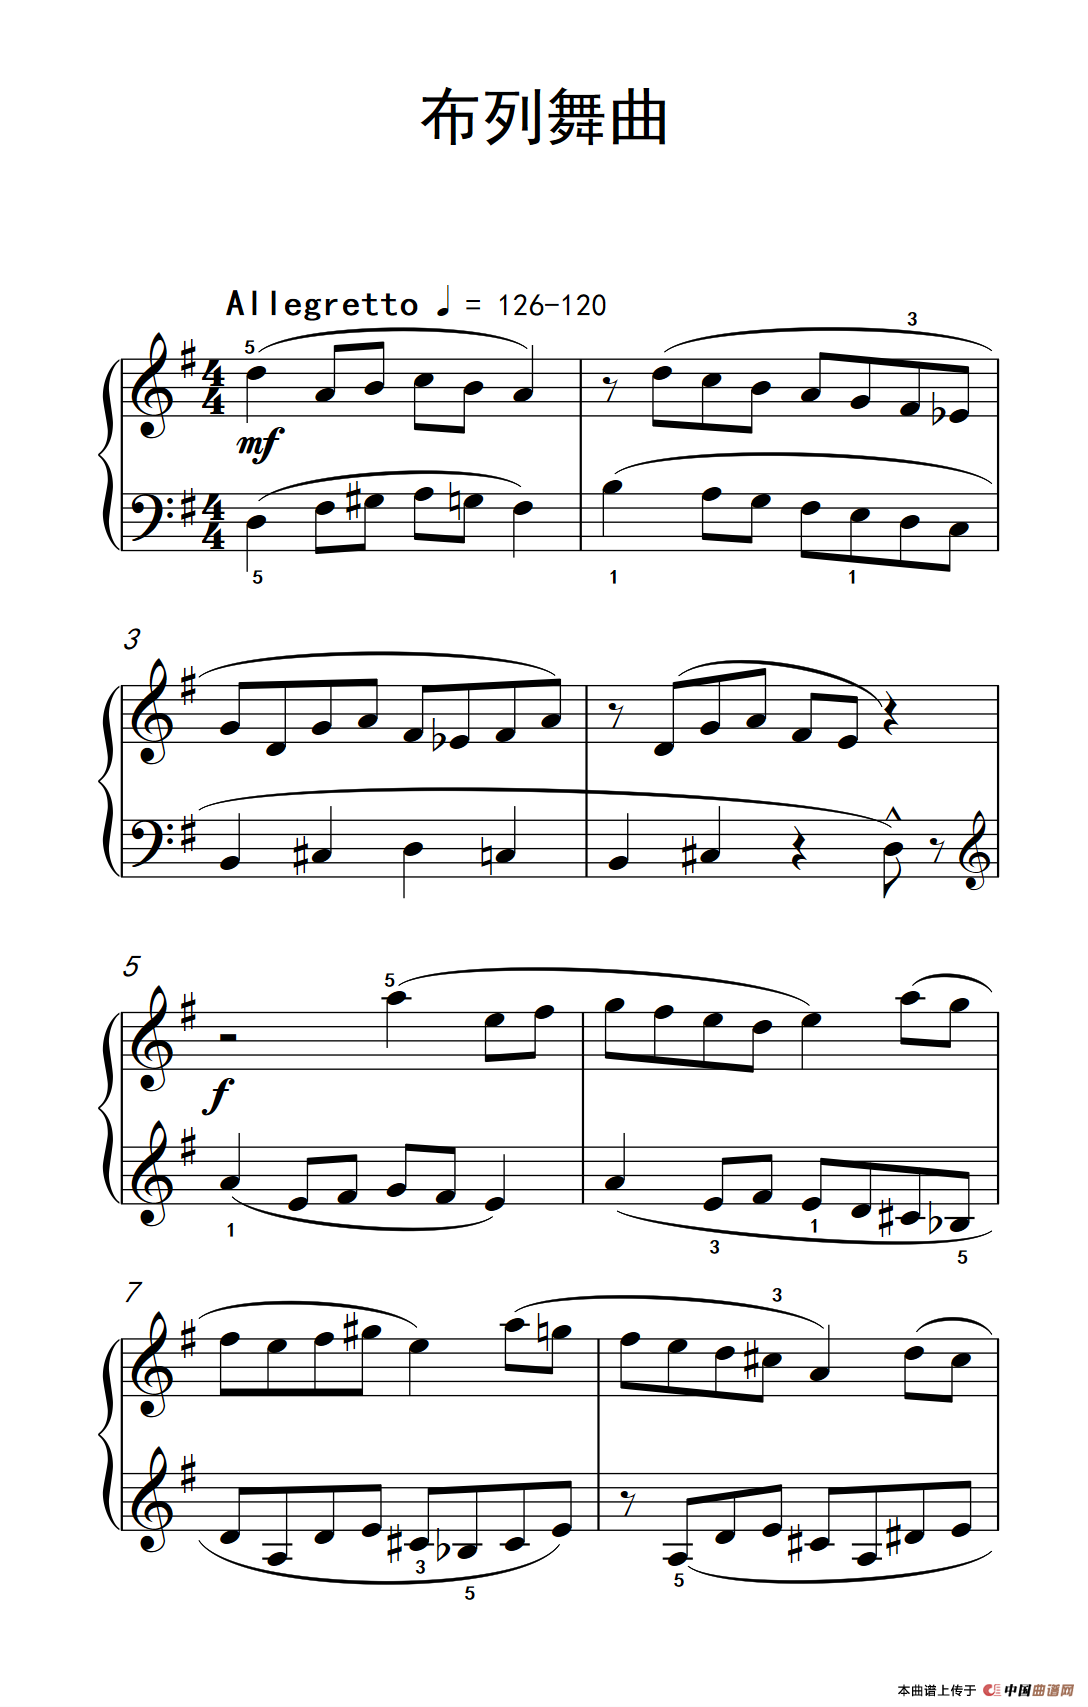 《布列舞曲》钢琴曲谱图分享